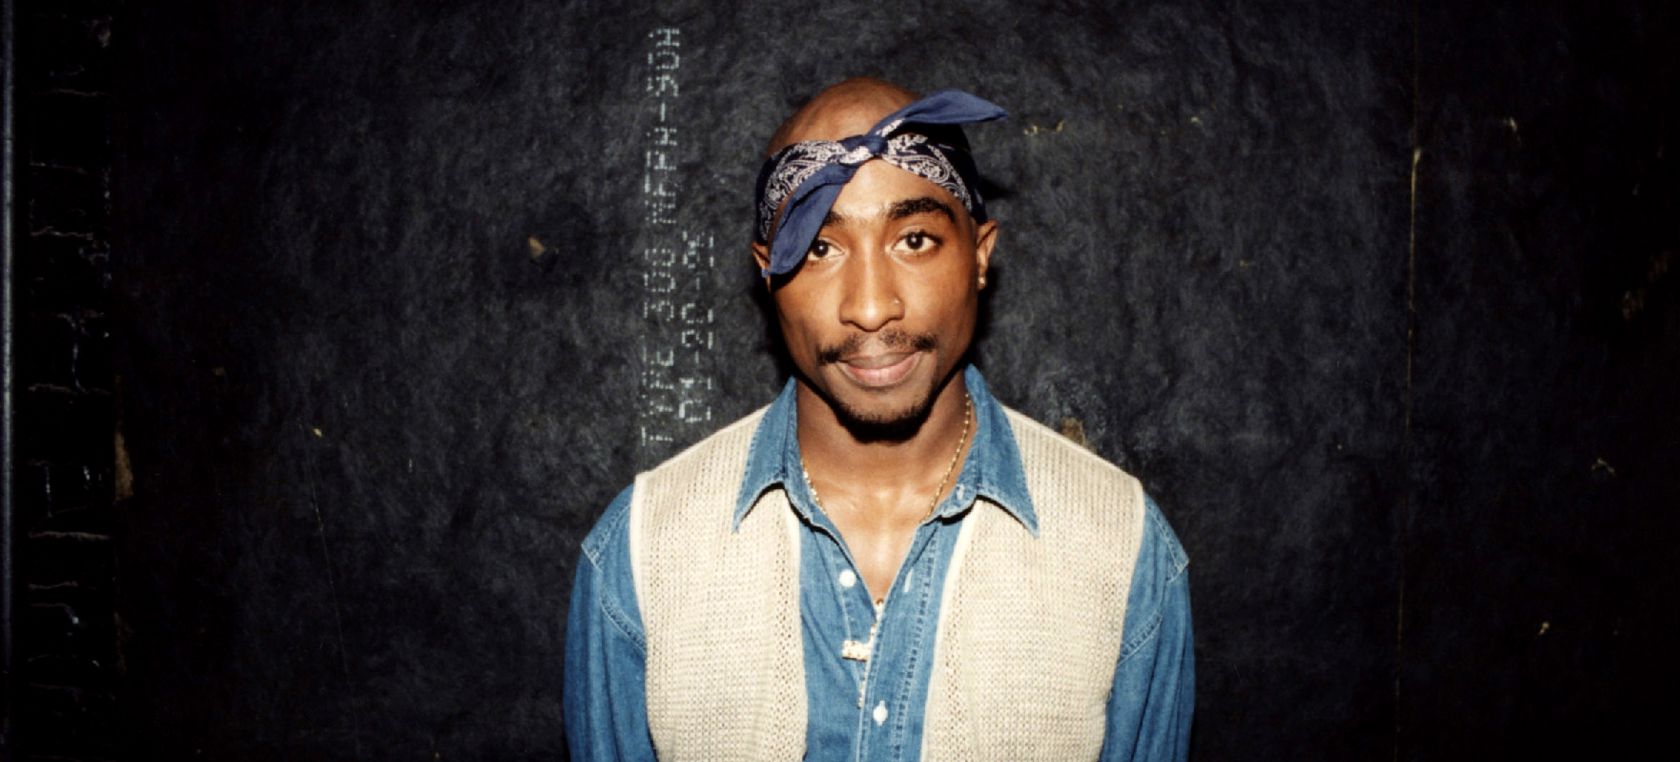 Réquiem por el rap: el día en que la muerte de Tupac supuso el fin de un icono y el inicio del 'gangsta'